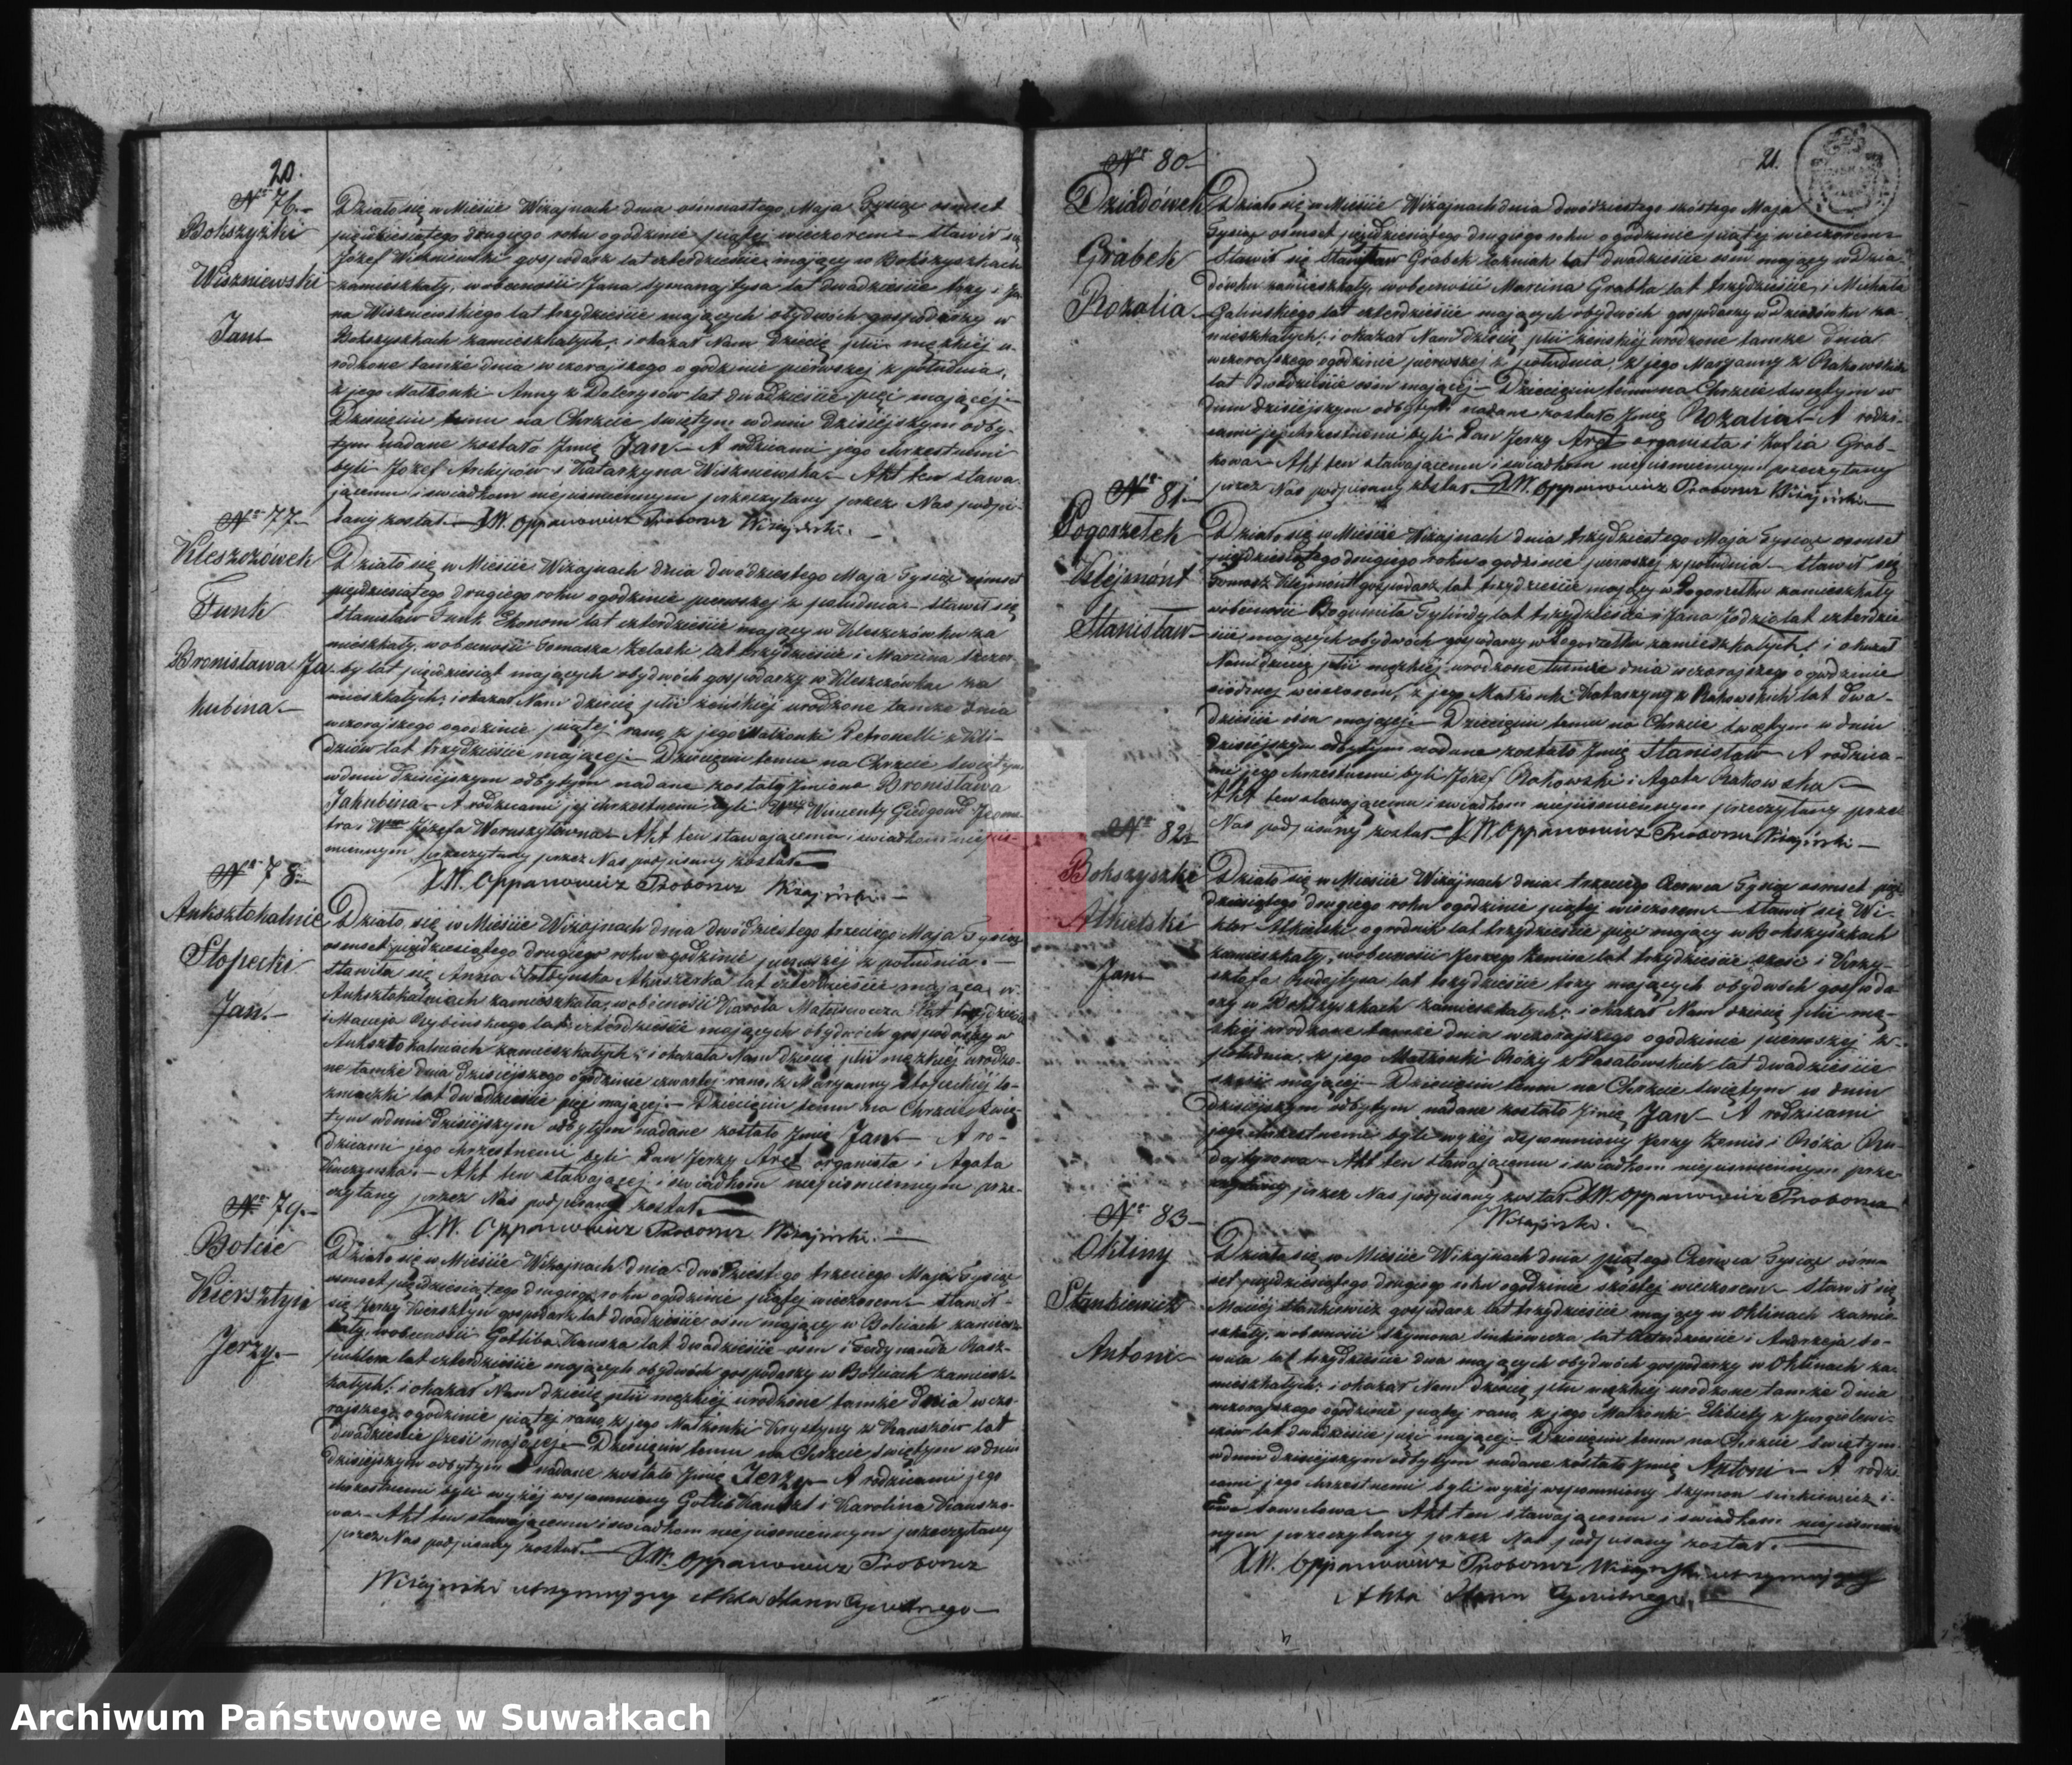 Skan z jednostki: Duplikat urodzonych, zaślubionych i umarłych parafii wiżajńskiej z roku 1852